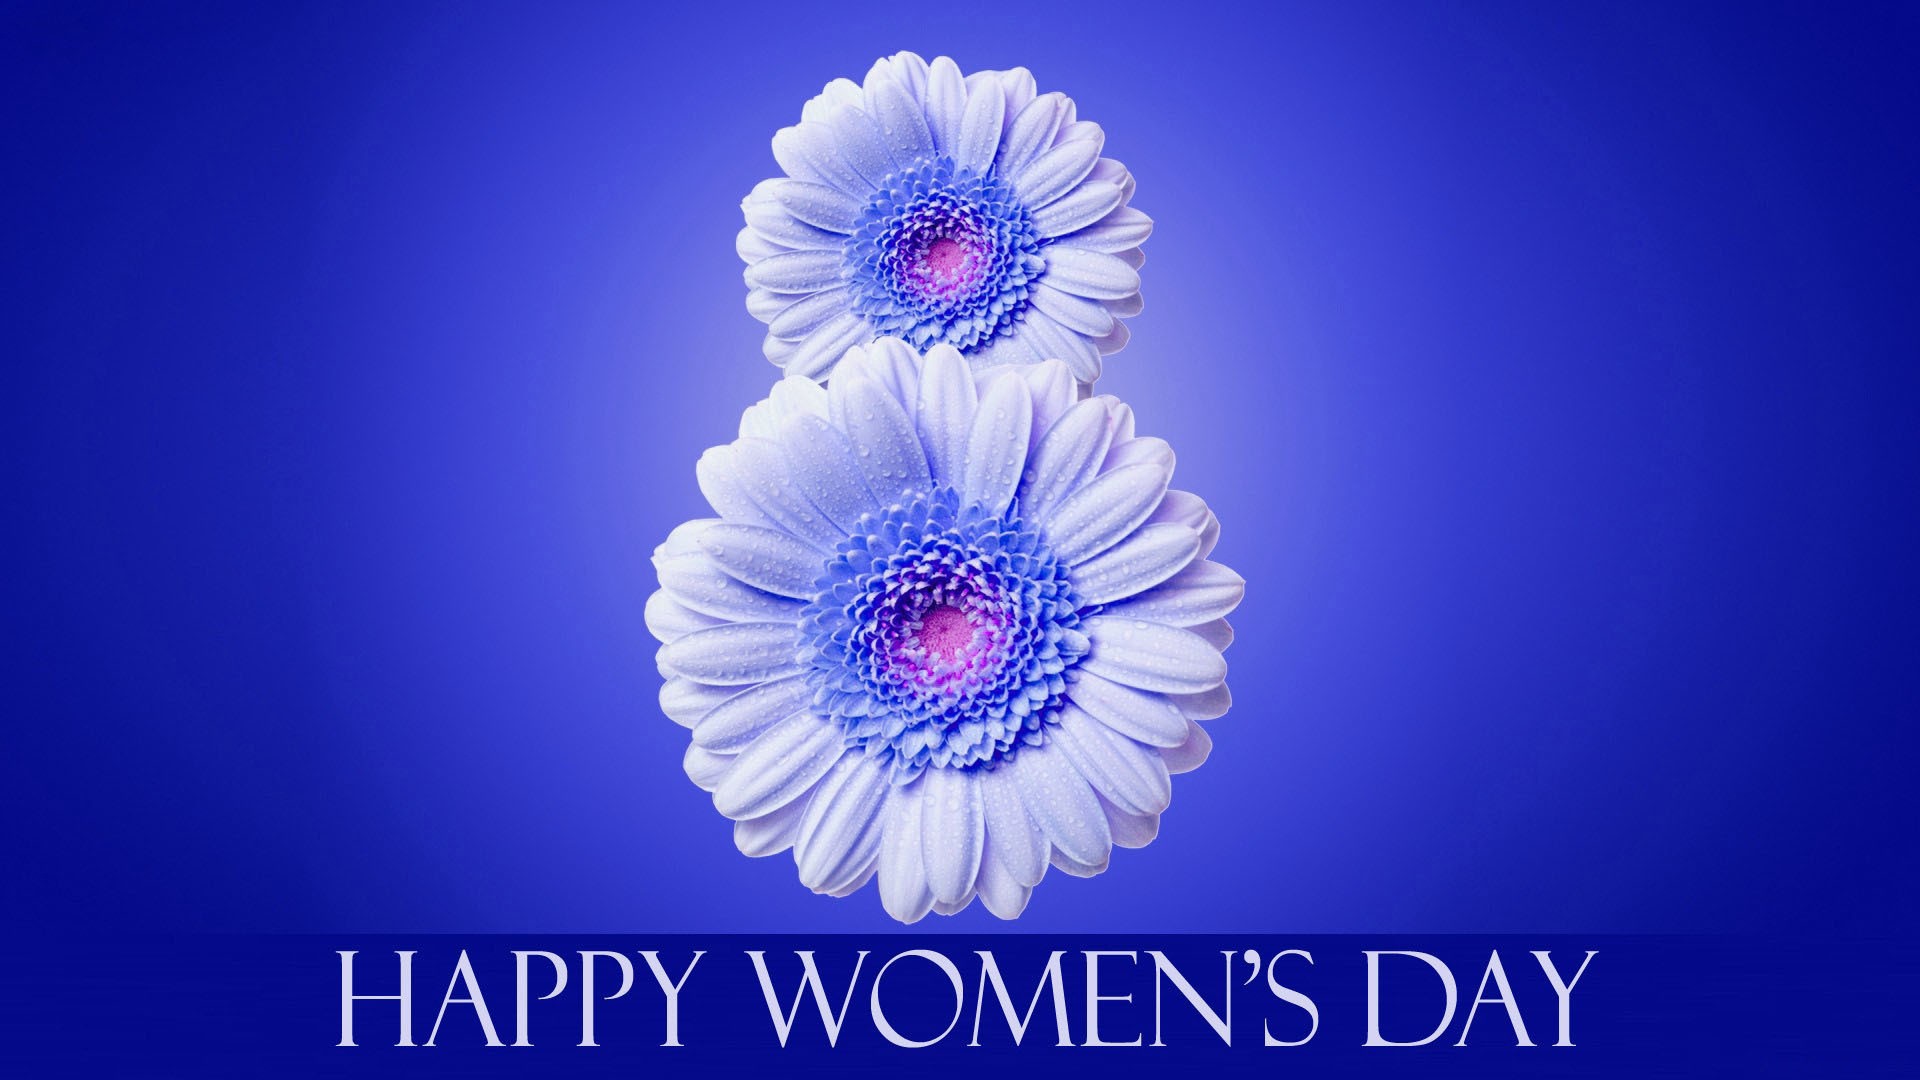 Happy Women's Day image theme